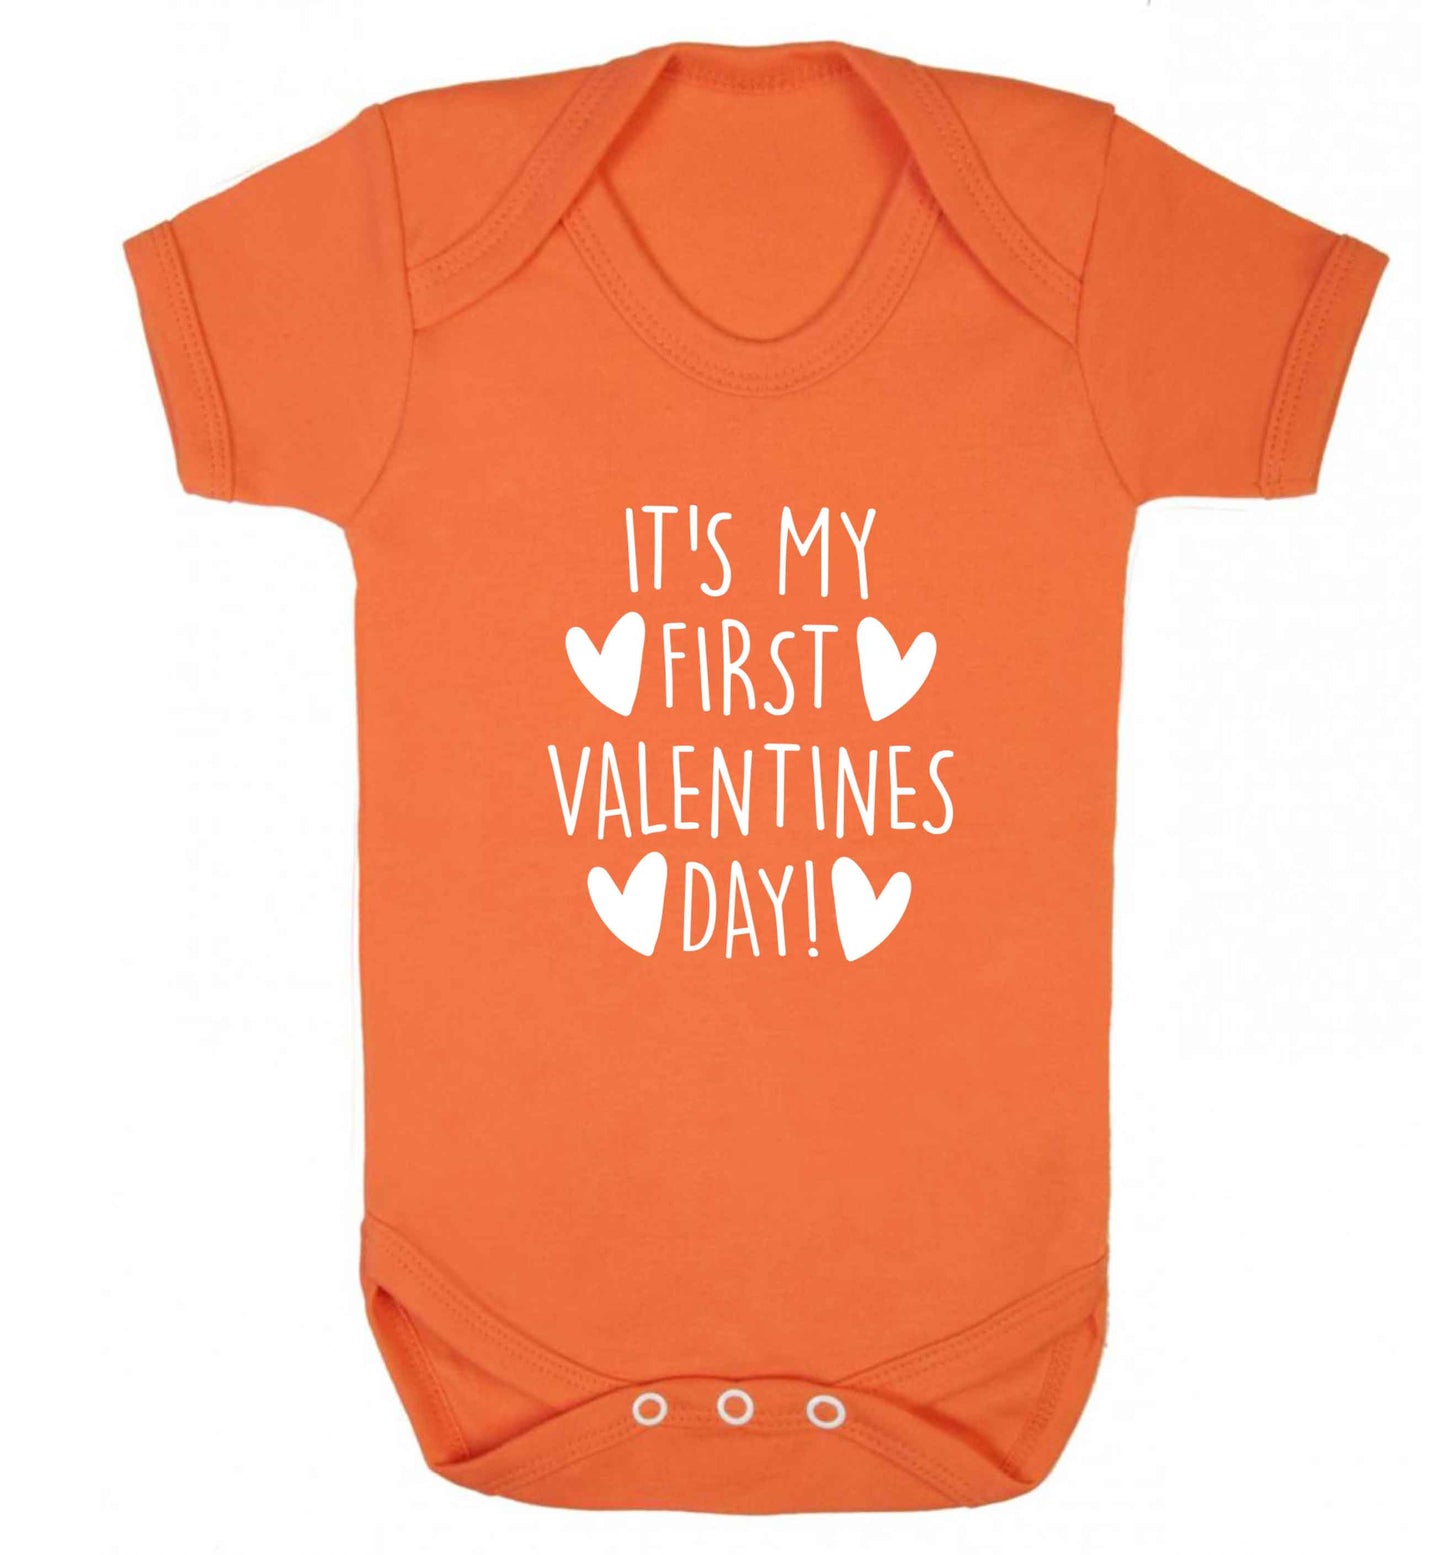 It's my first valentines day! baby vest orange 18-24 months